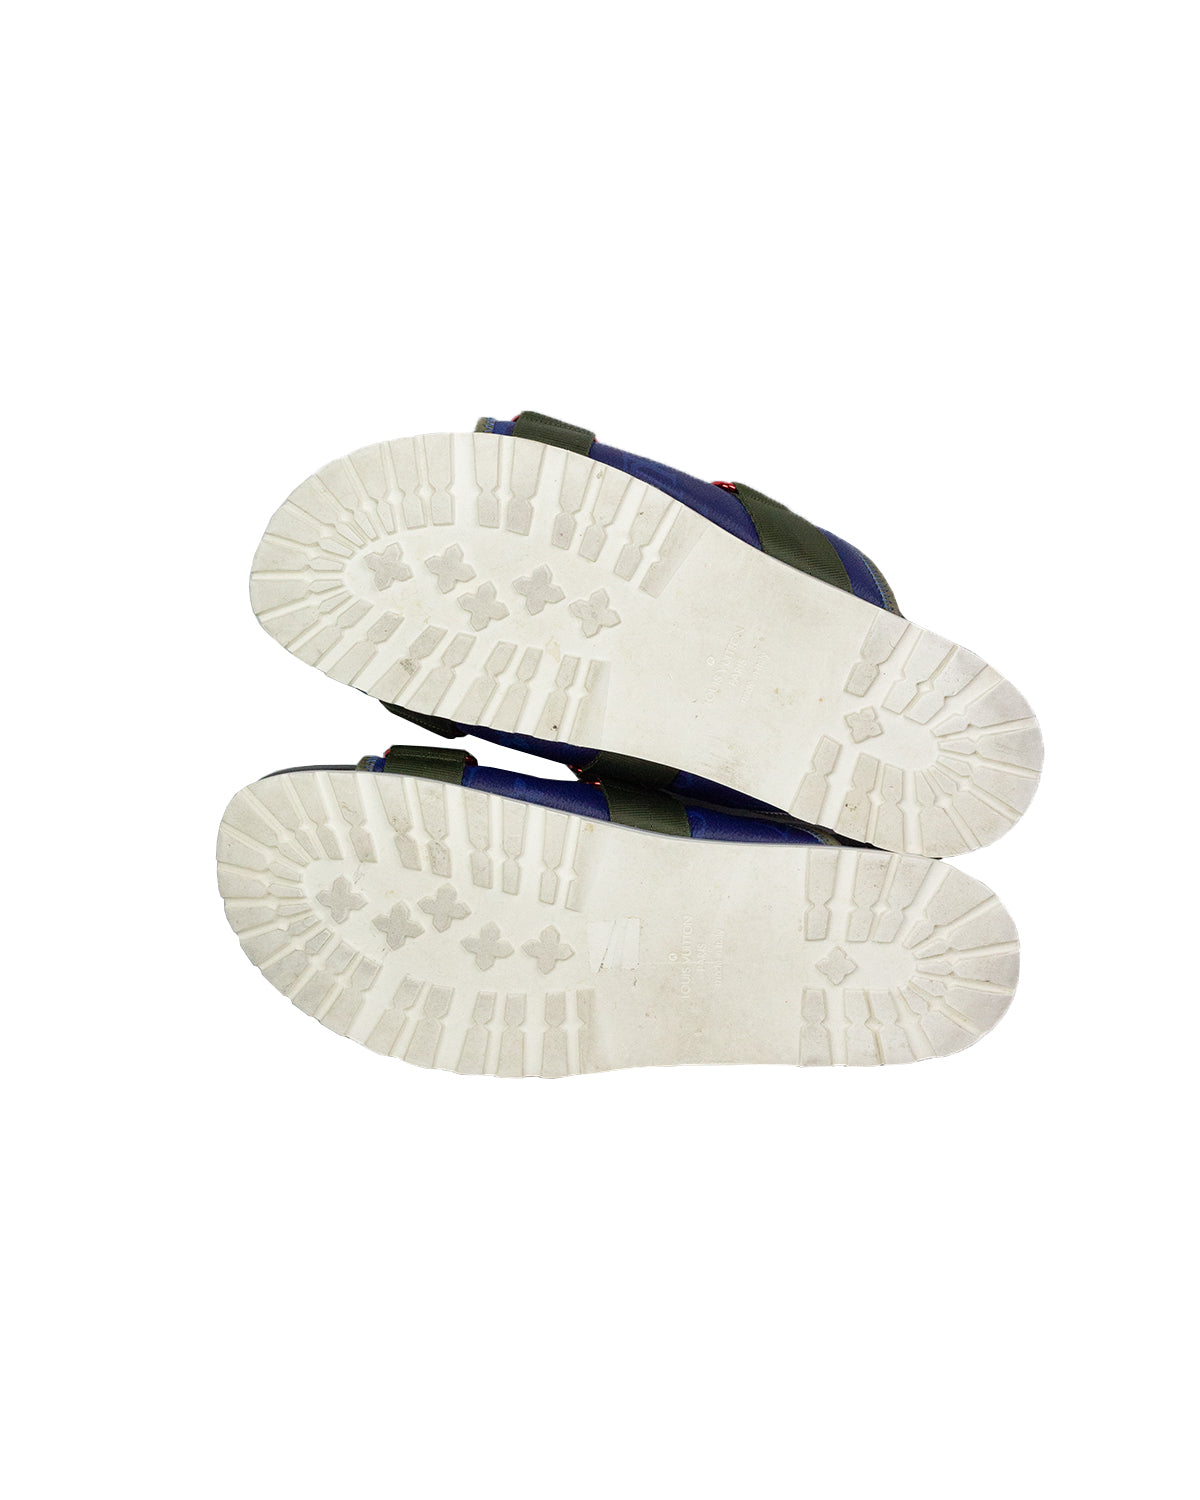 Louis Vuitton 2019 Honolulu 'Watercolor Monogram' Slides - White Sandals,  Shoes - LOU612138